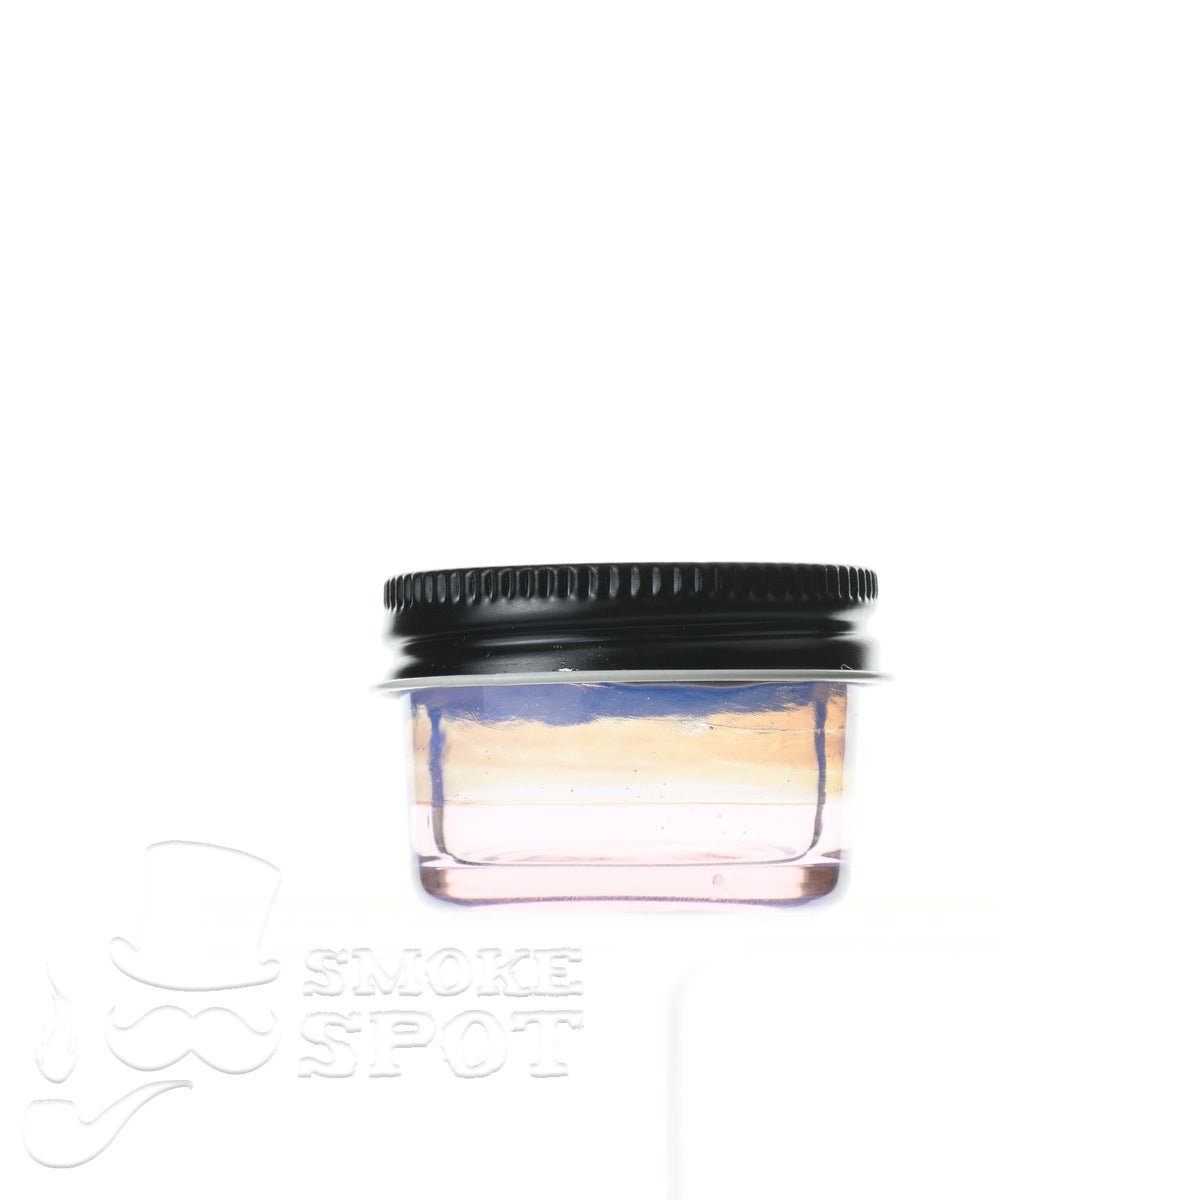 Glass enthuastic jar 106 - Smoke Spot Smoke Shop